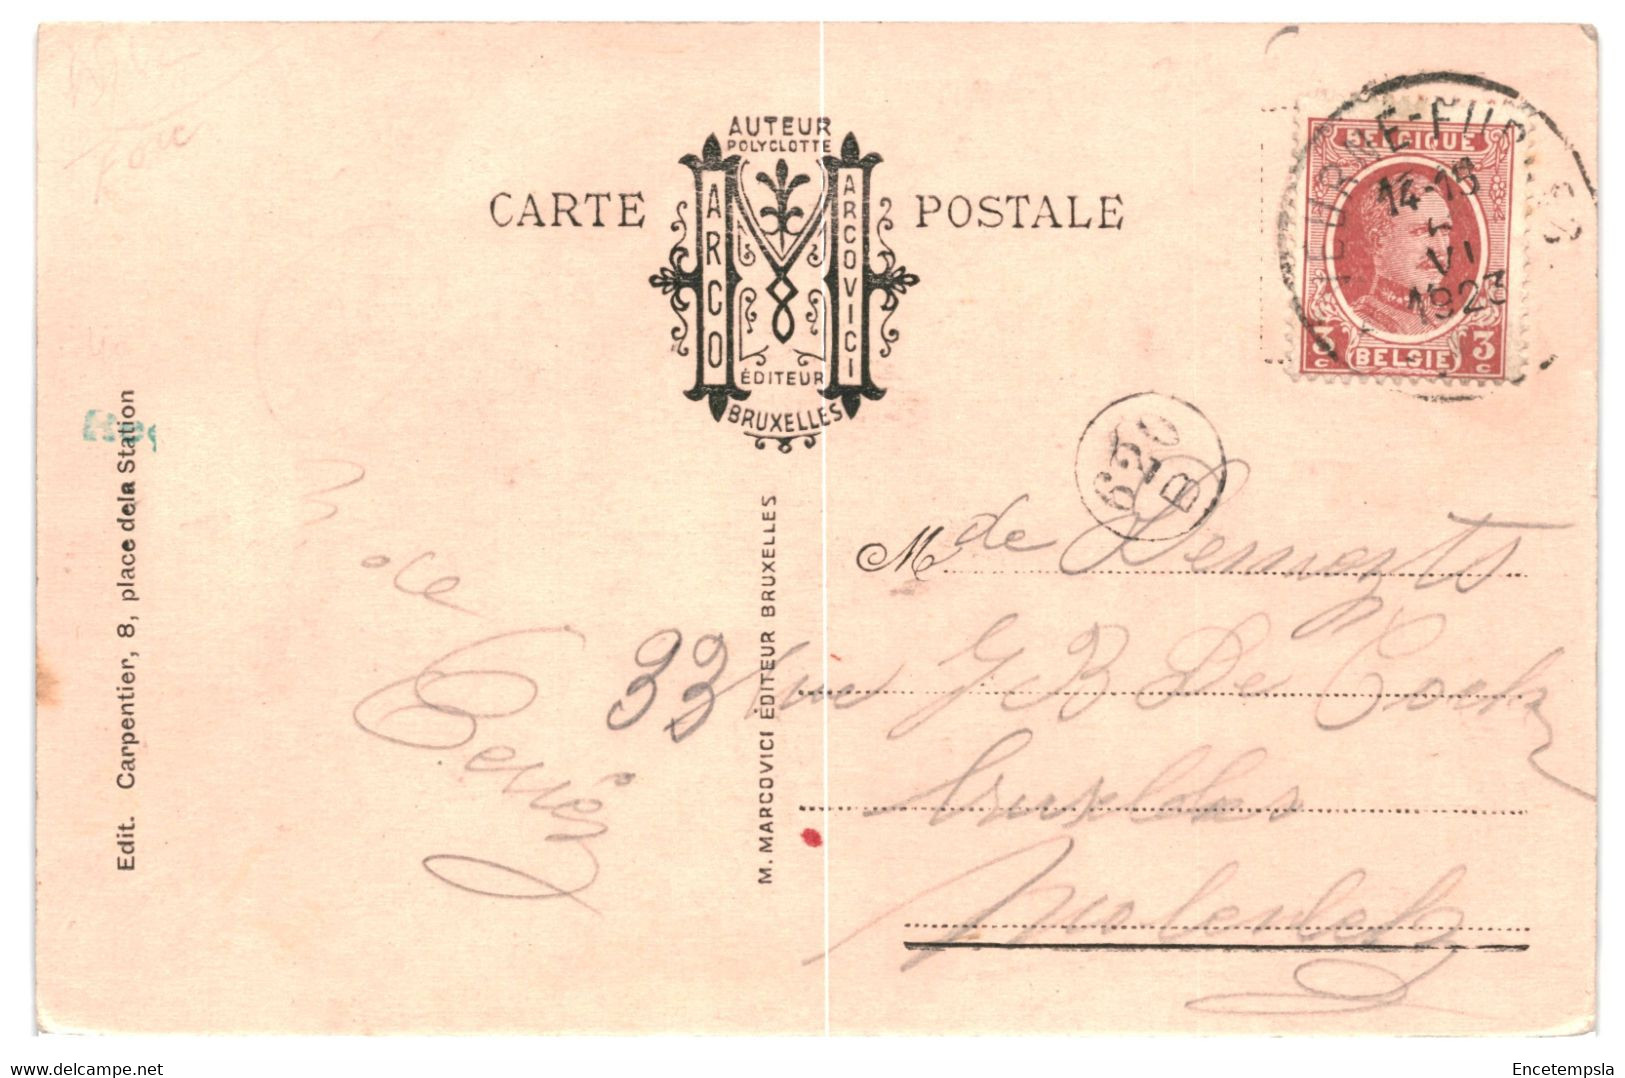 CPA - Carte postale - Belgique Lot de 22 cartes postales de Furnes  VMfurnes